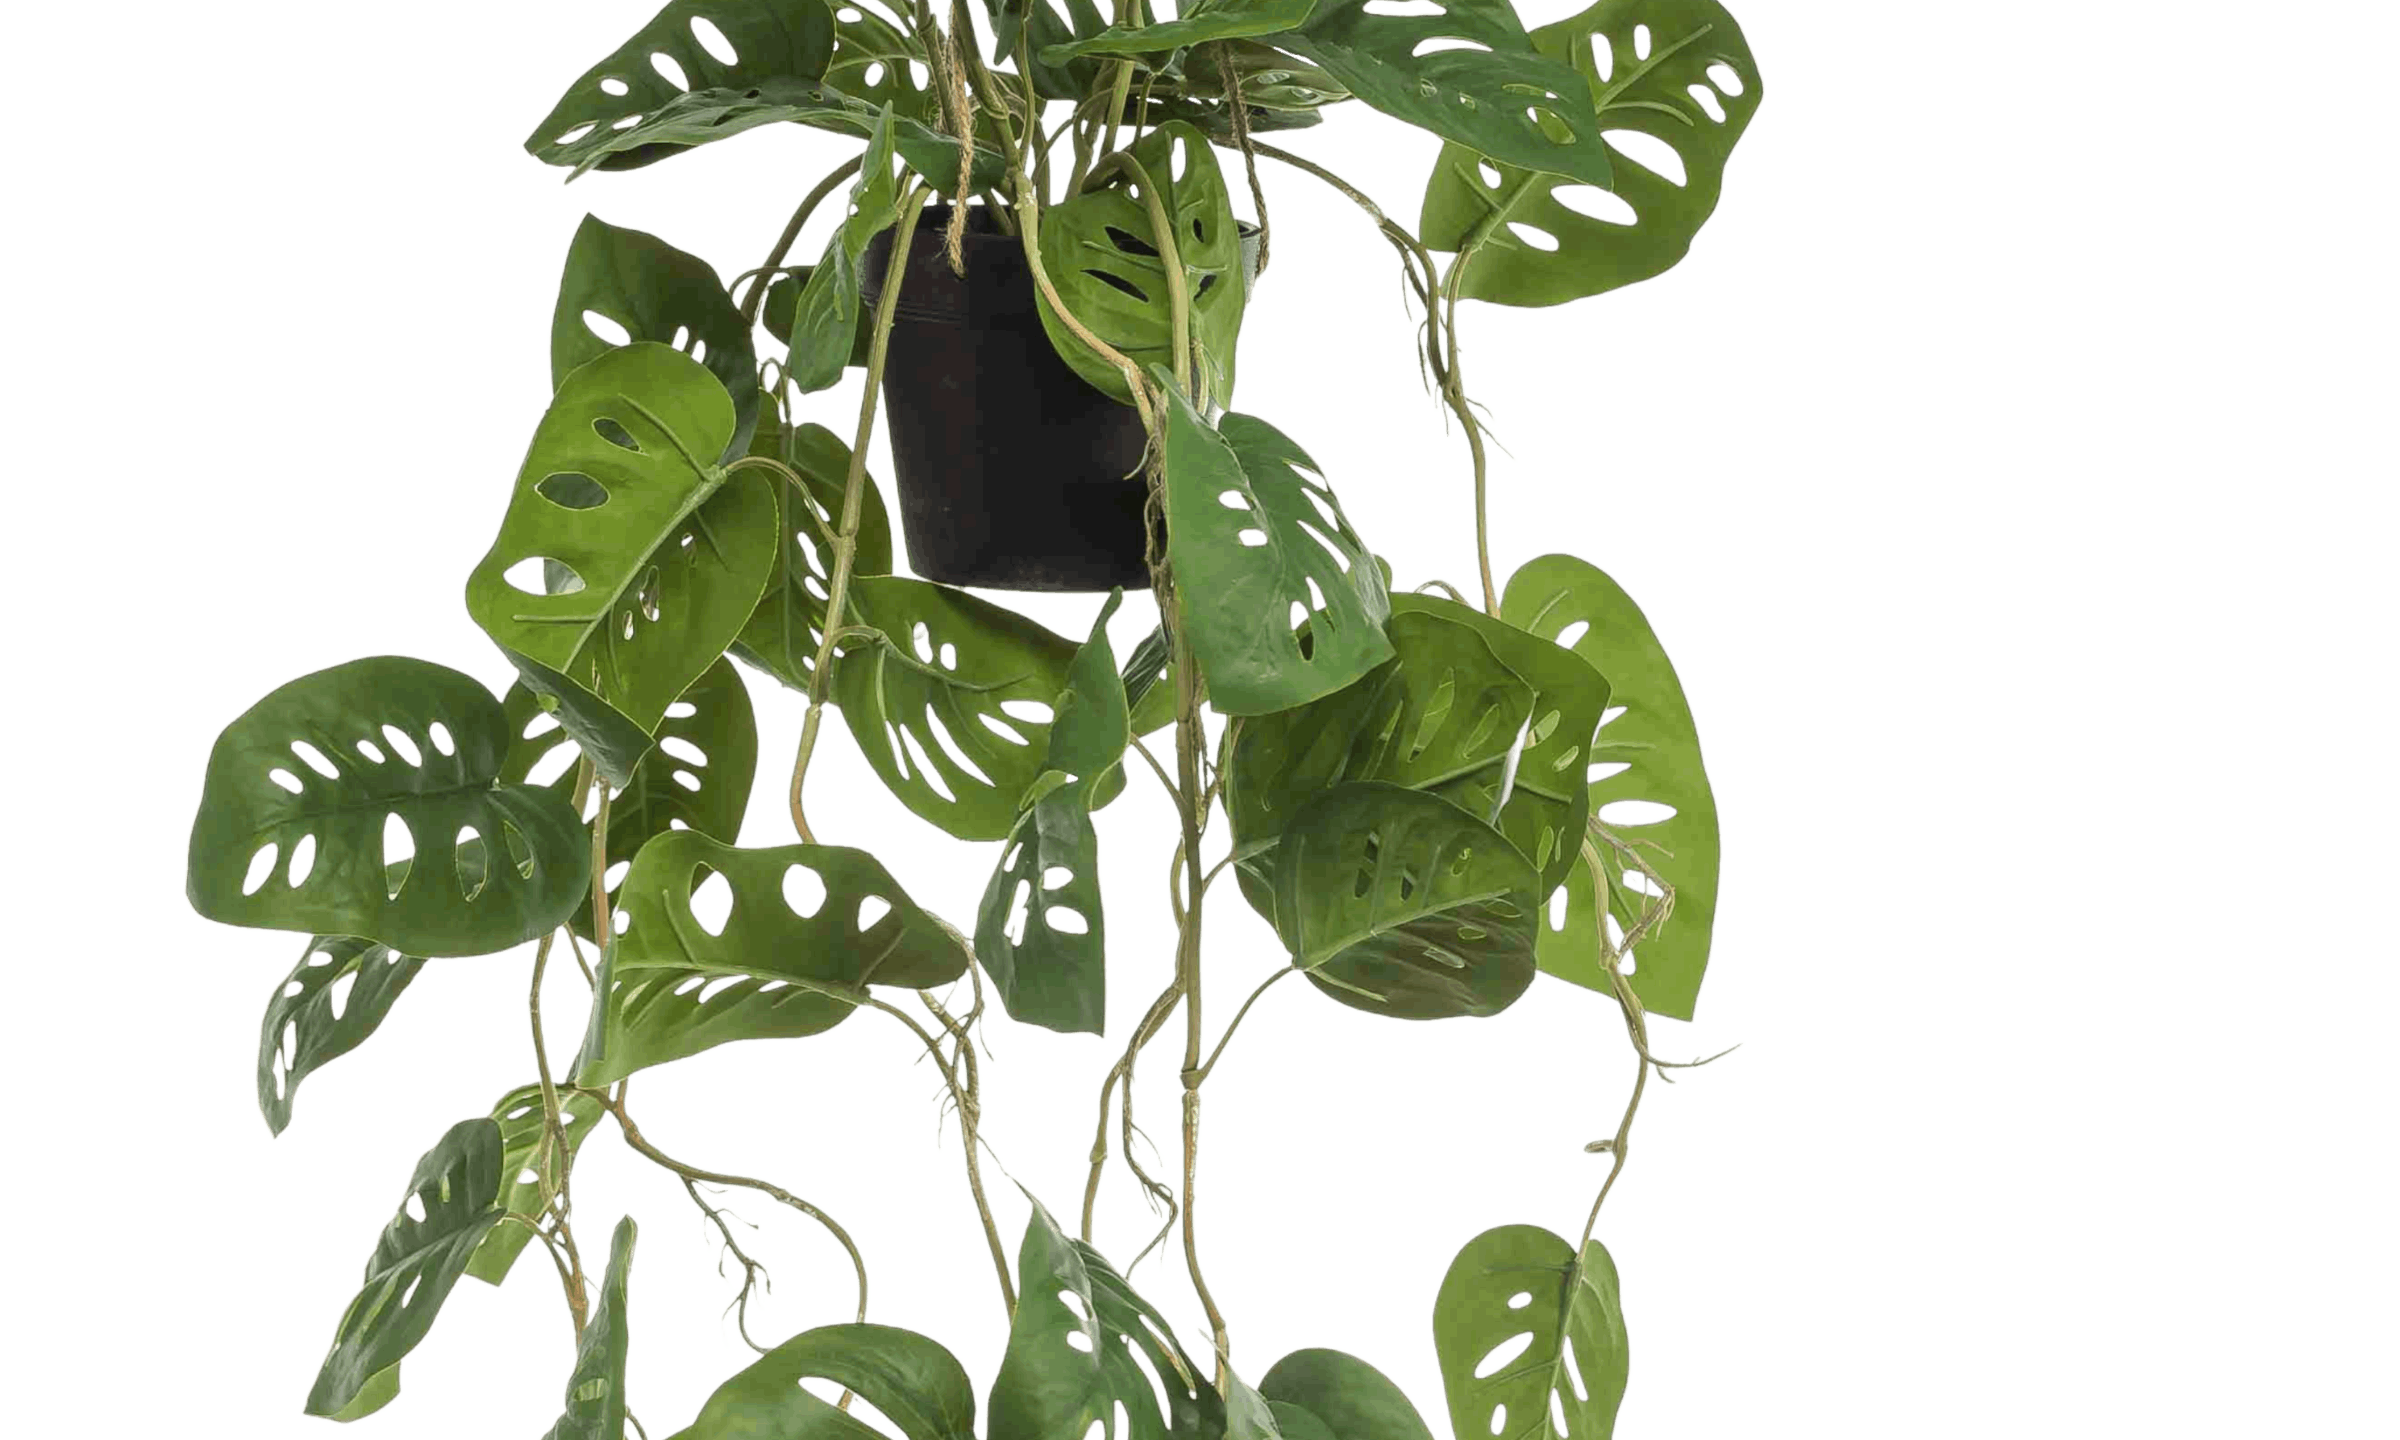 Closeup of hanging faux monkey monstera foliage